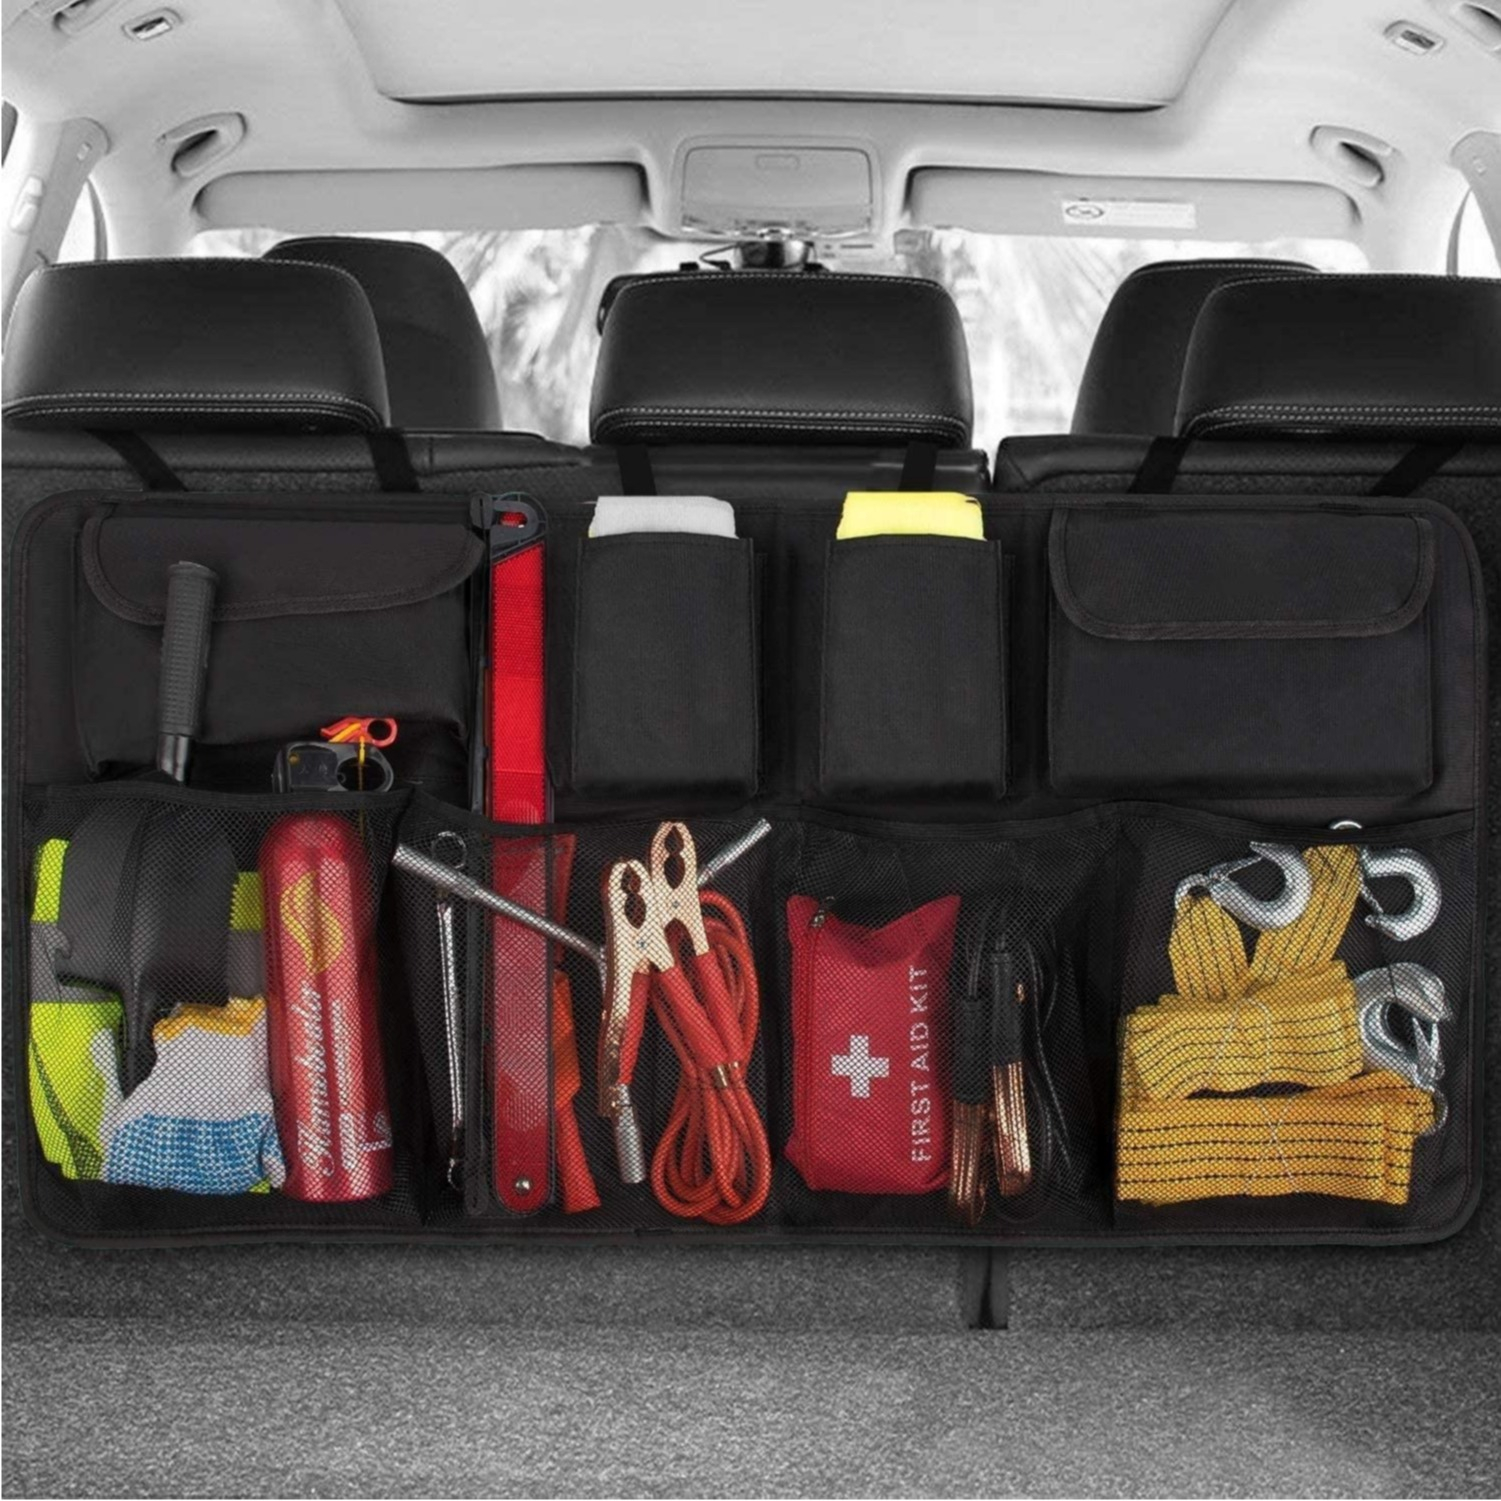 AUTO XS Organizer/Tasche für Kofferraum oder Rückbank